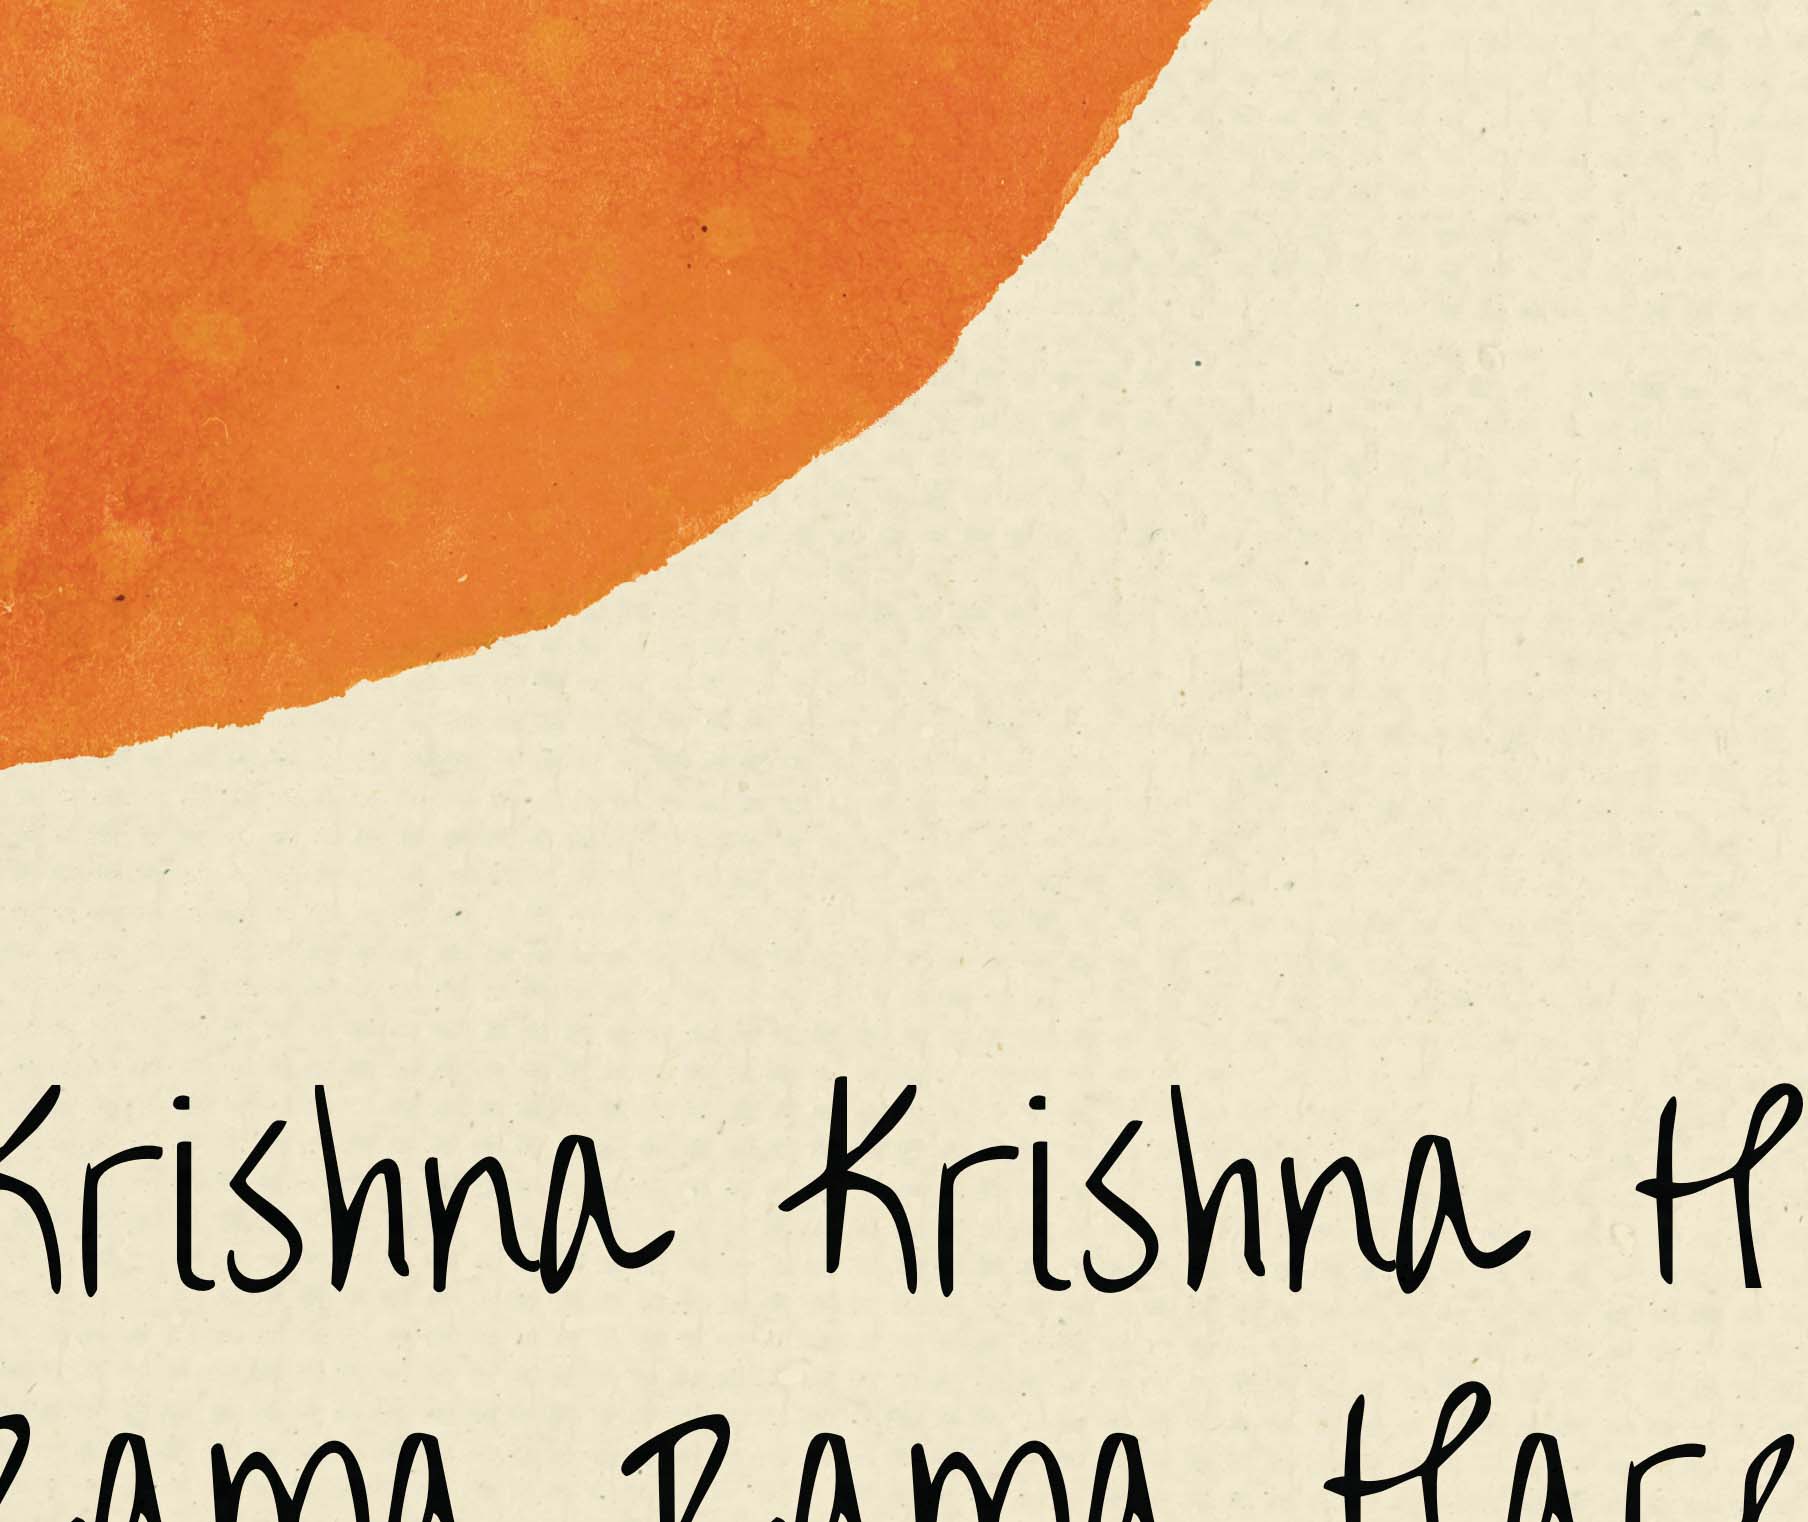 Hare Krishna Mantra Print, Krishna Wall Art Print - A Cozy Mess